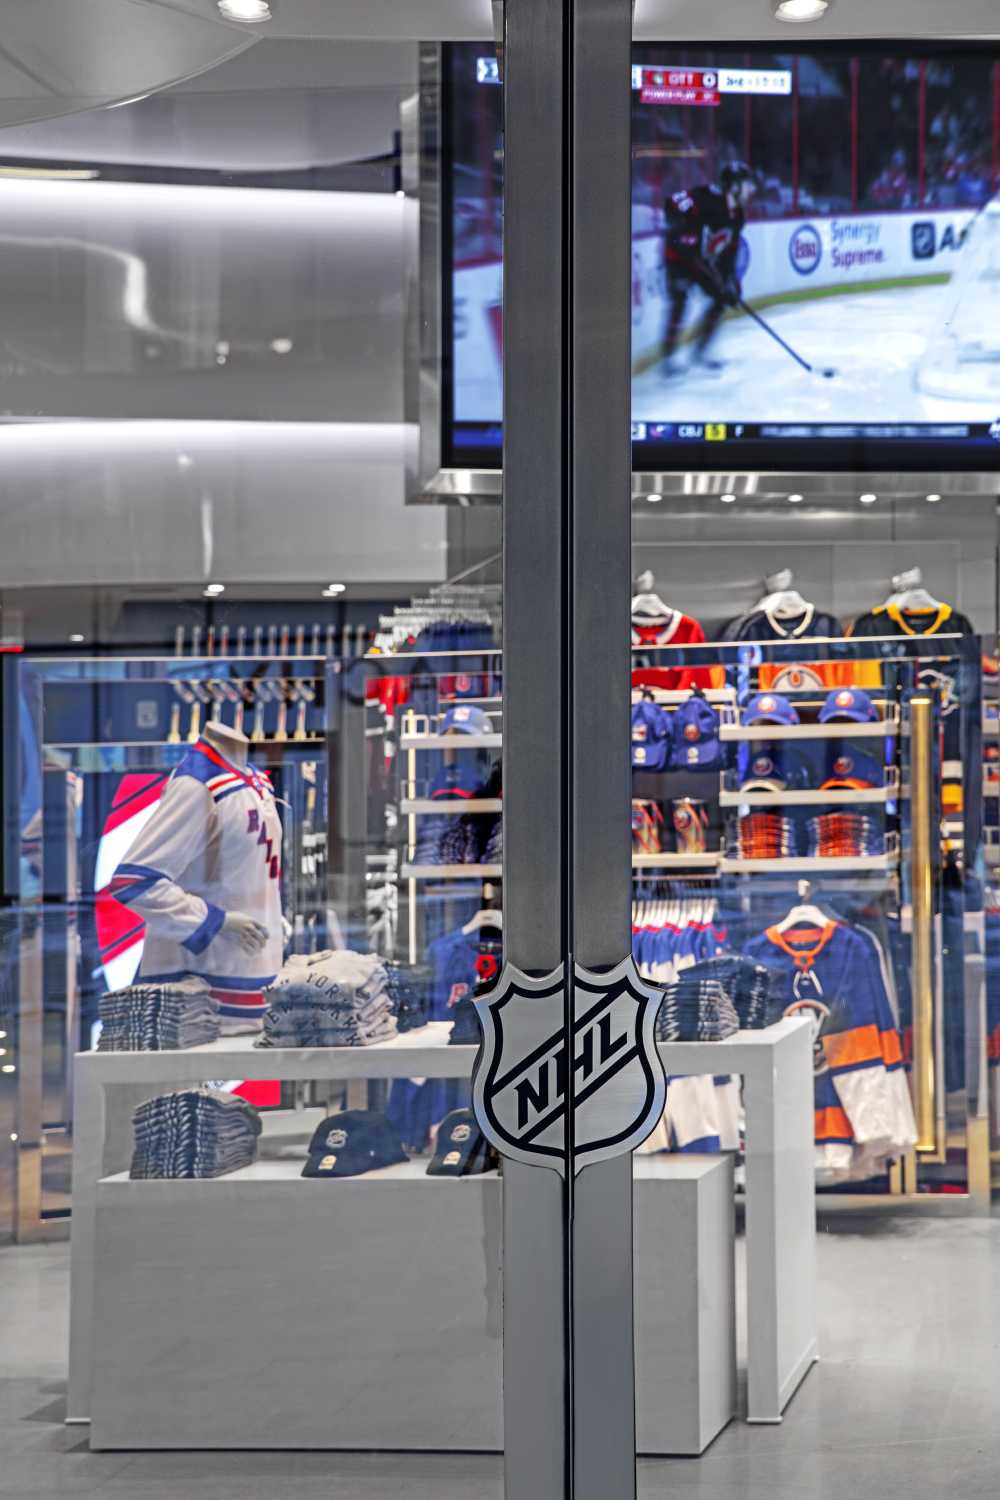 NHL Shop : TPG Architecture